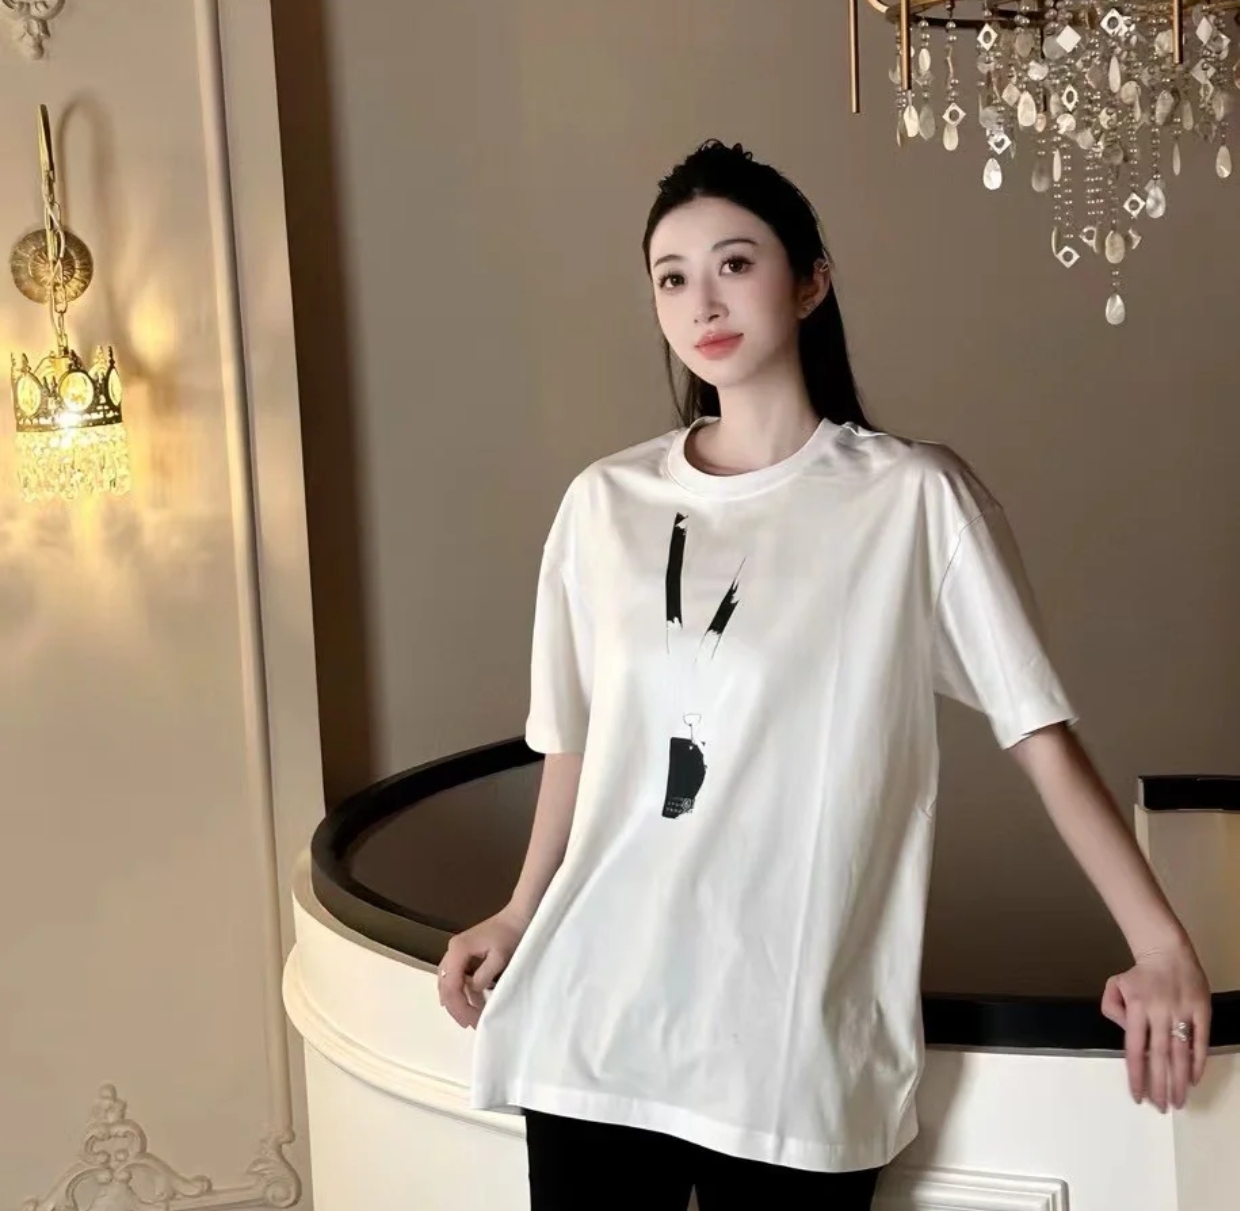 Balenciaga Clothing T-Shirt Black White Printing Unisex Combed Cotton Short Sleeve